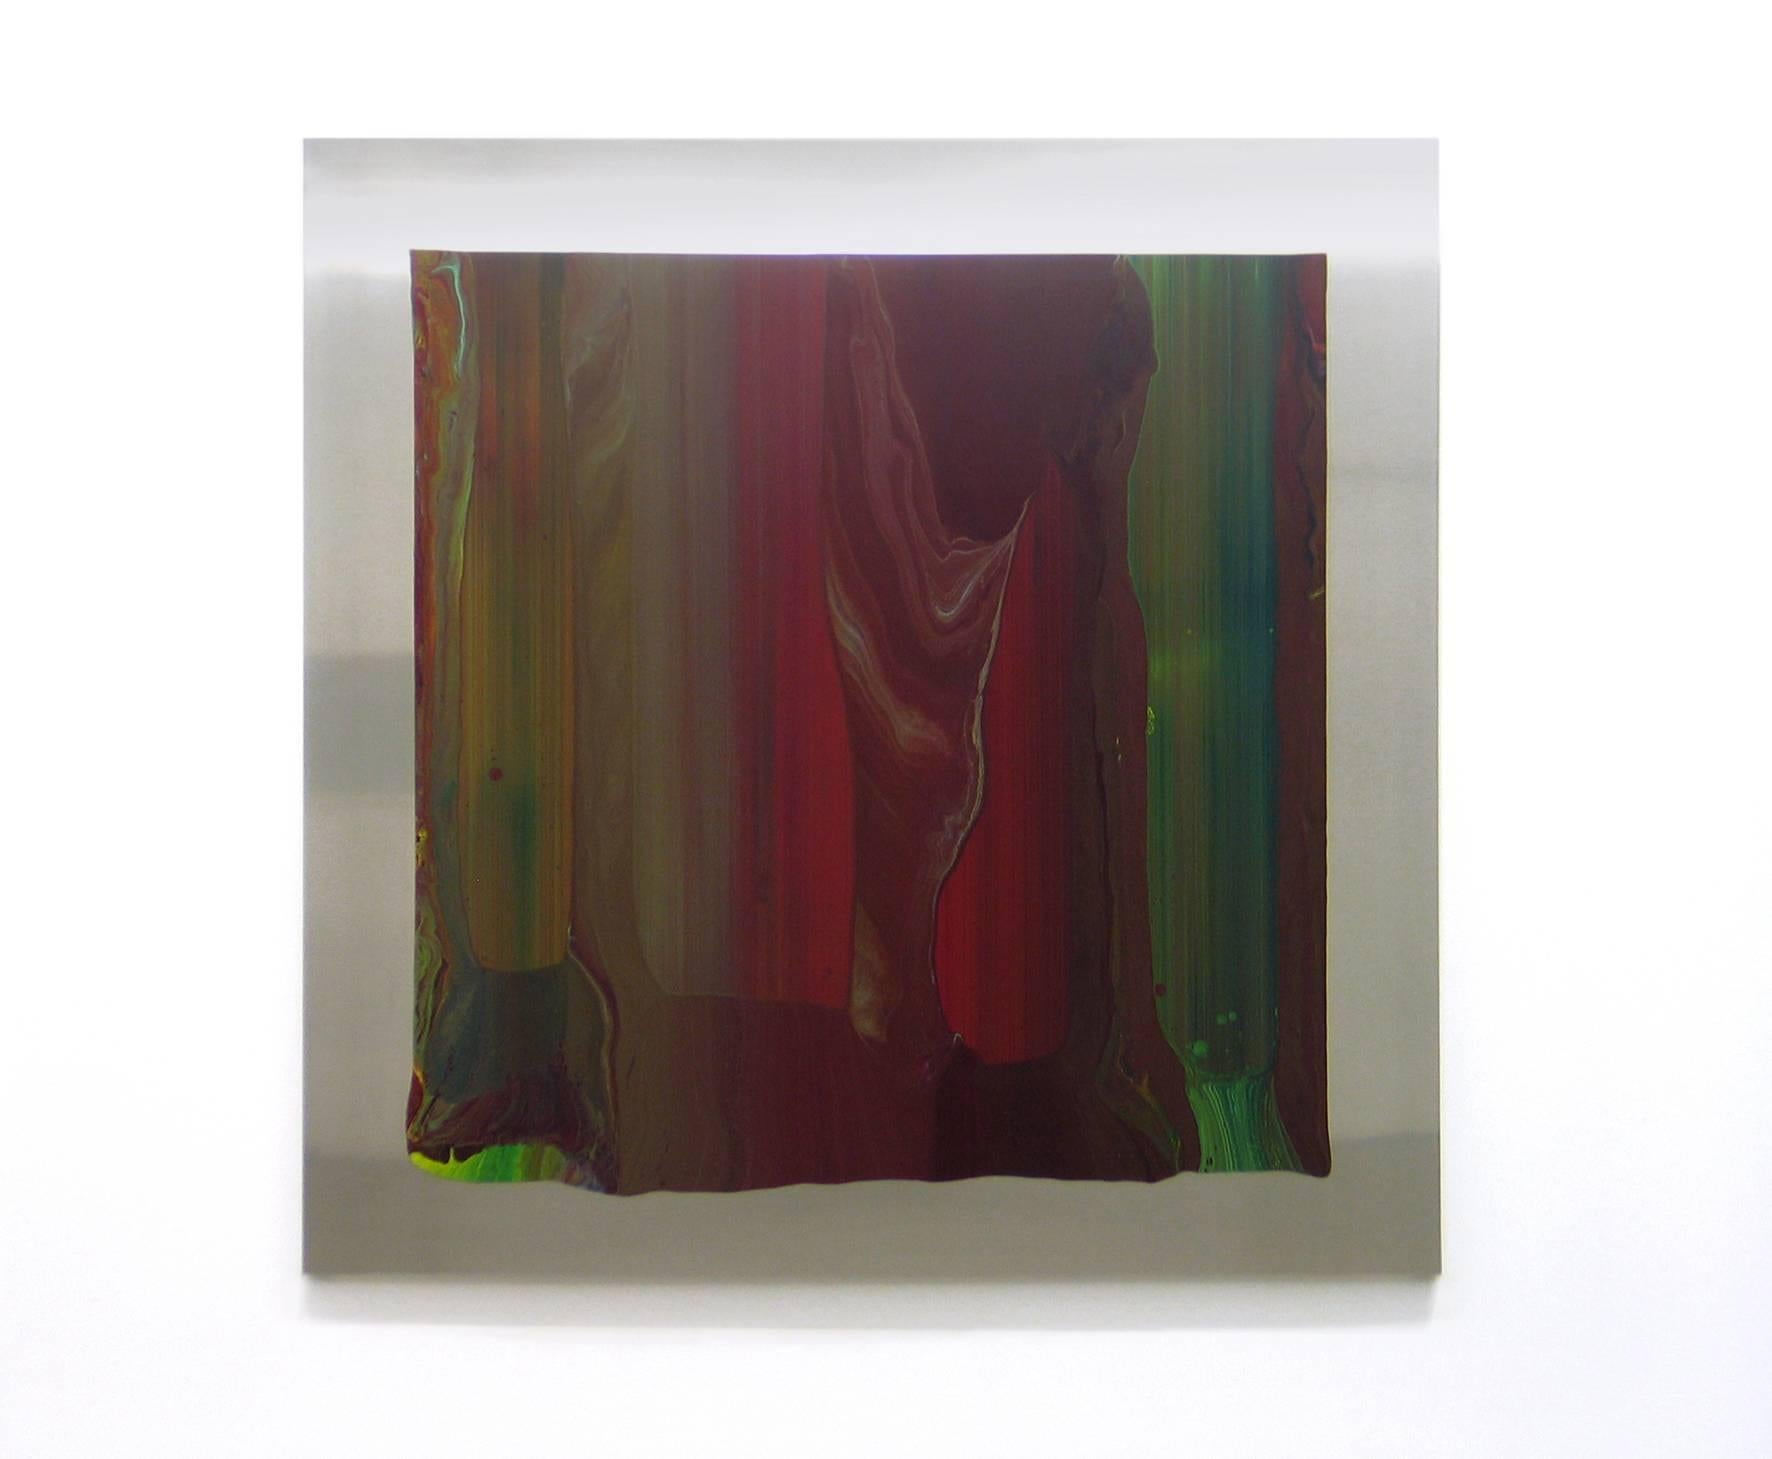 a112007-3 ist ein Gemälde auf Aluminium des zeitgenössischen Künstlers Ahn Hyun-Ju, das Teil der Serie "Unfolded Lines" ist. In dieser Serie abstrakter Werke arbeitet der Künstler mit leuchtenden Farben in großen Farbflächen und bewahrt dabei